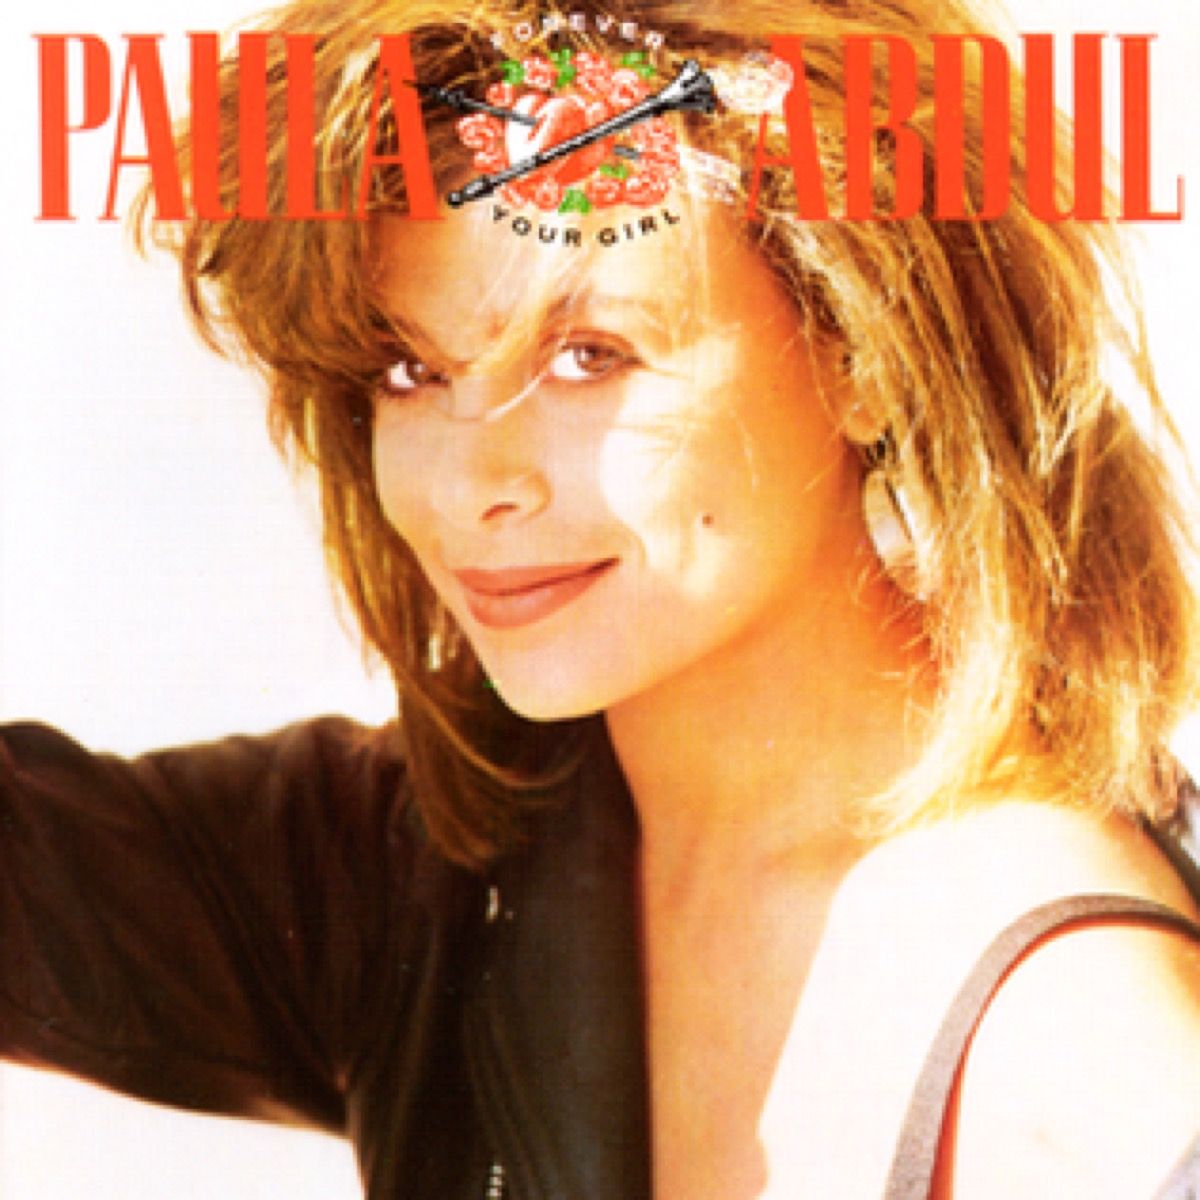 albumi kujundus paula abdul igavesti oma tüdrukule, 1989. aasta suve laul